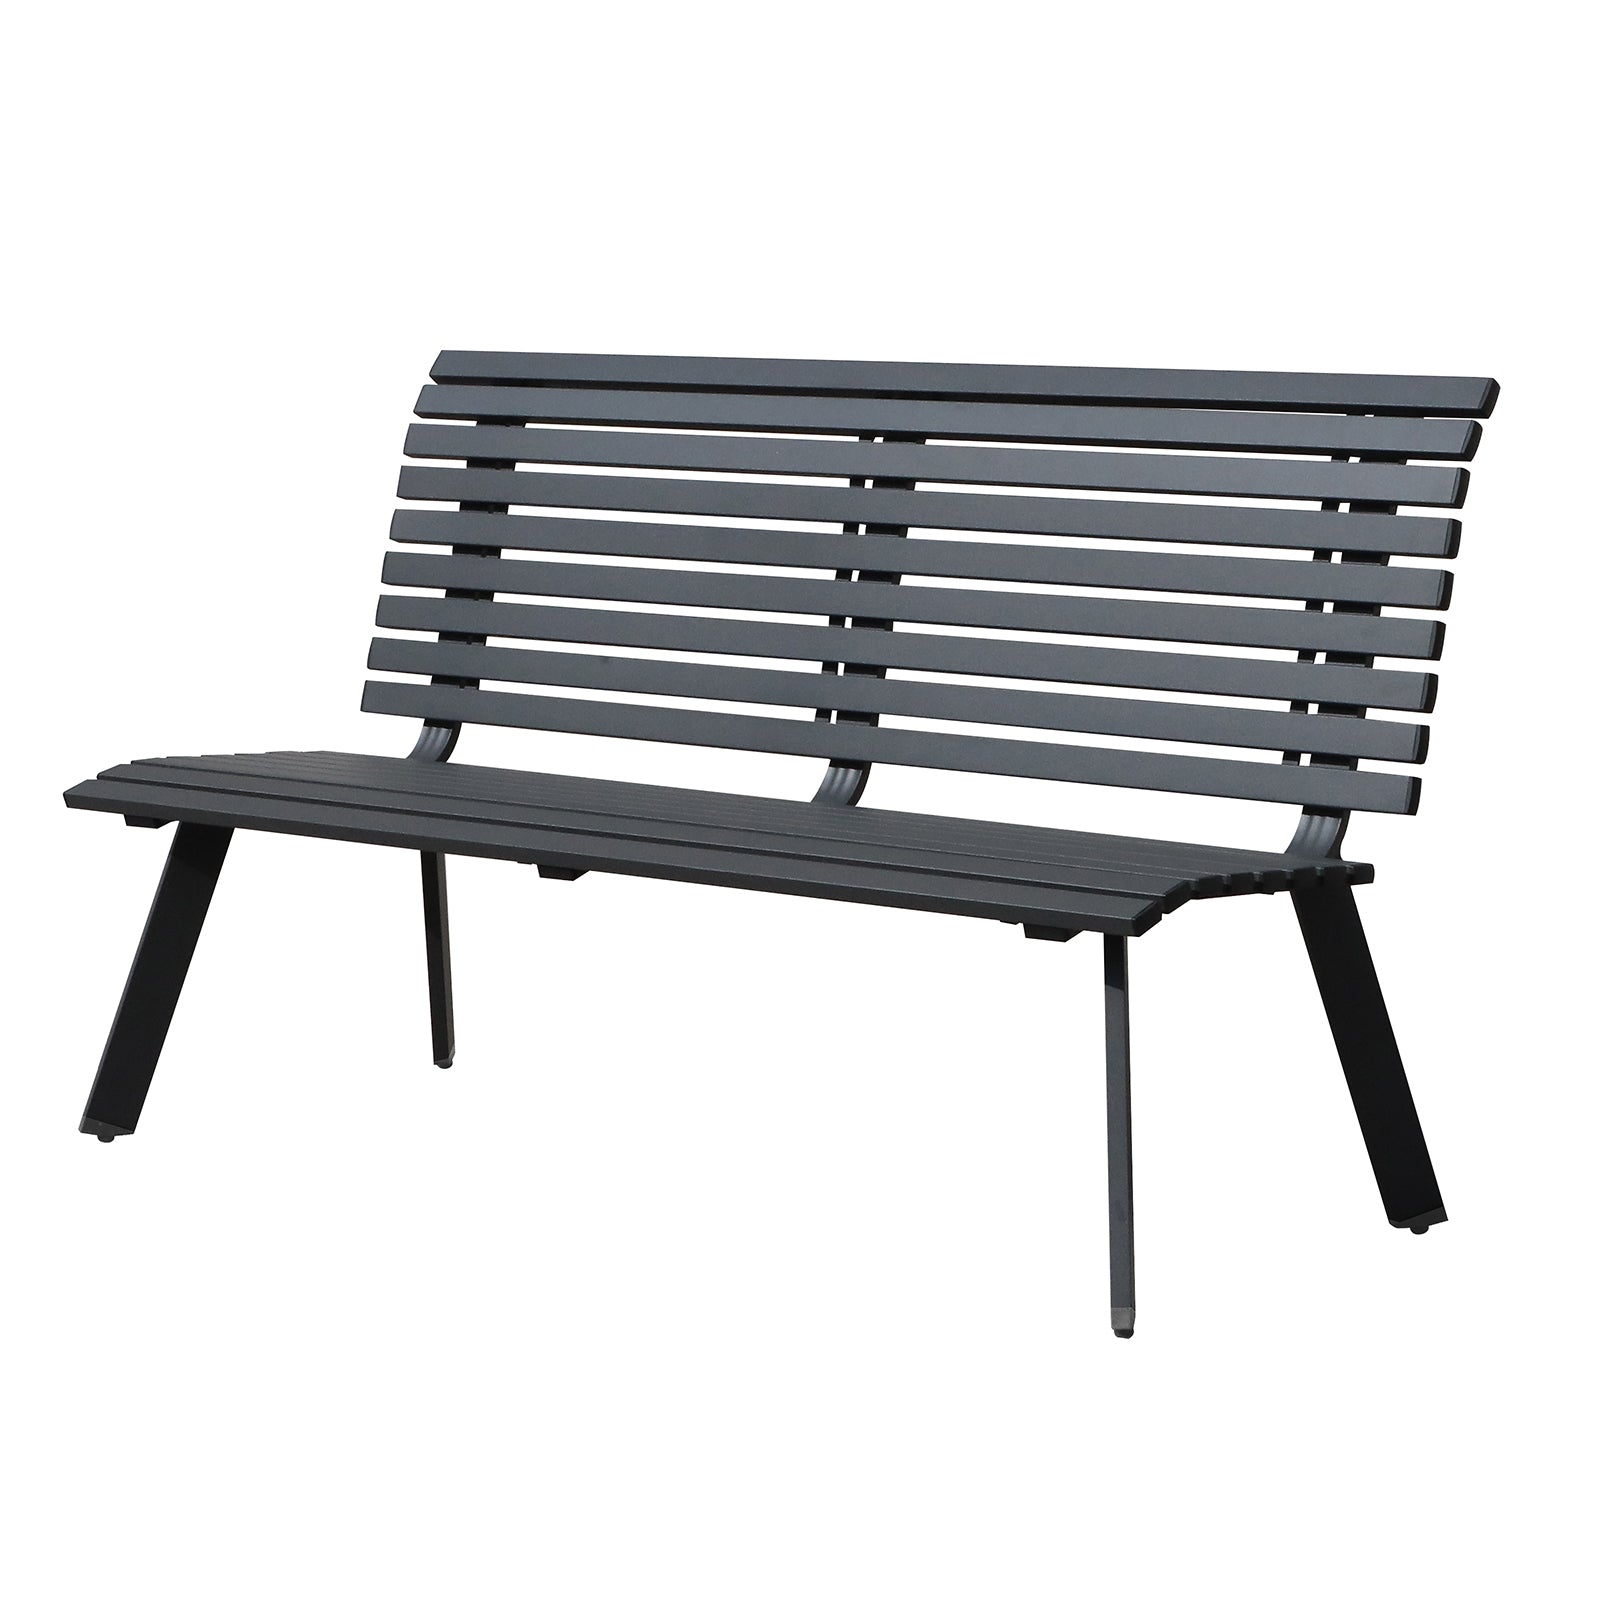 Outdoor Aluminum Garden Bench, Patio Porch Chair Furniture, Slatted Design with/Backrest, Dark Grey